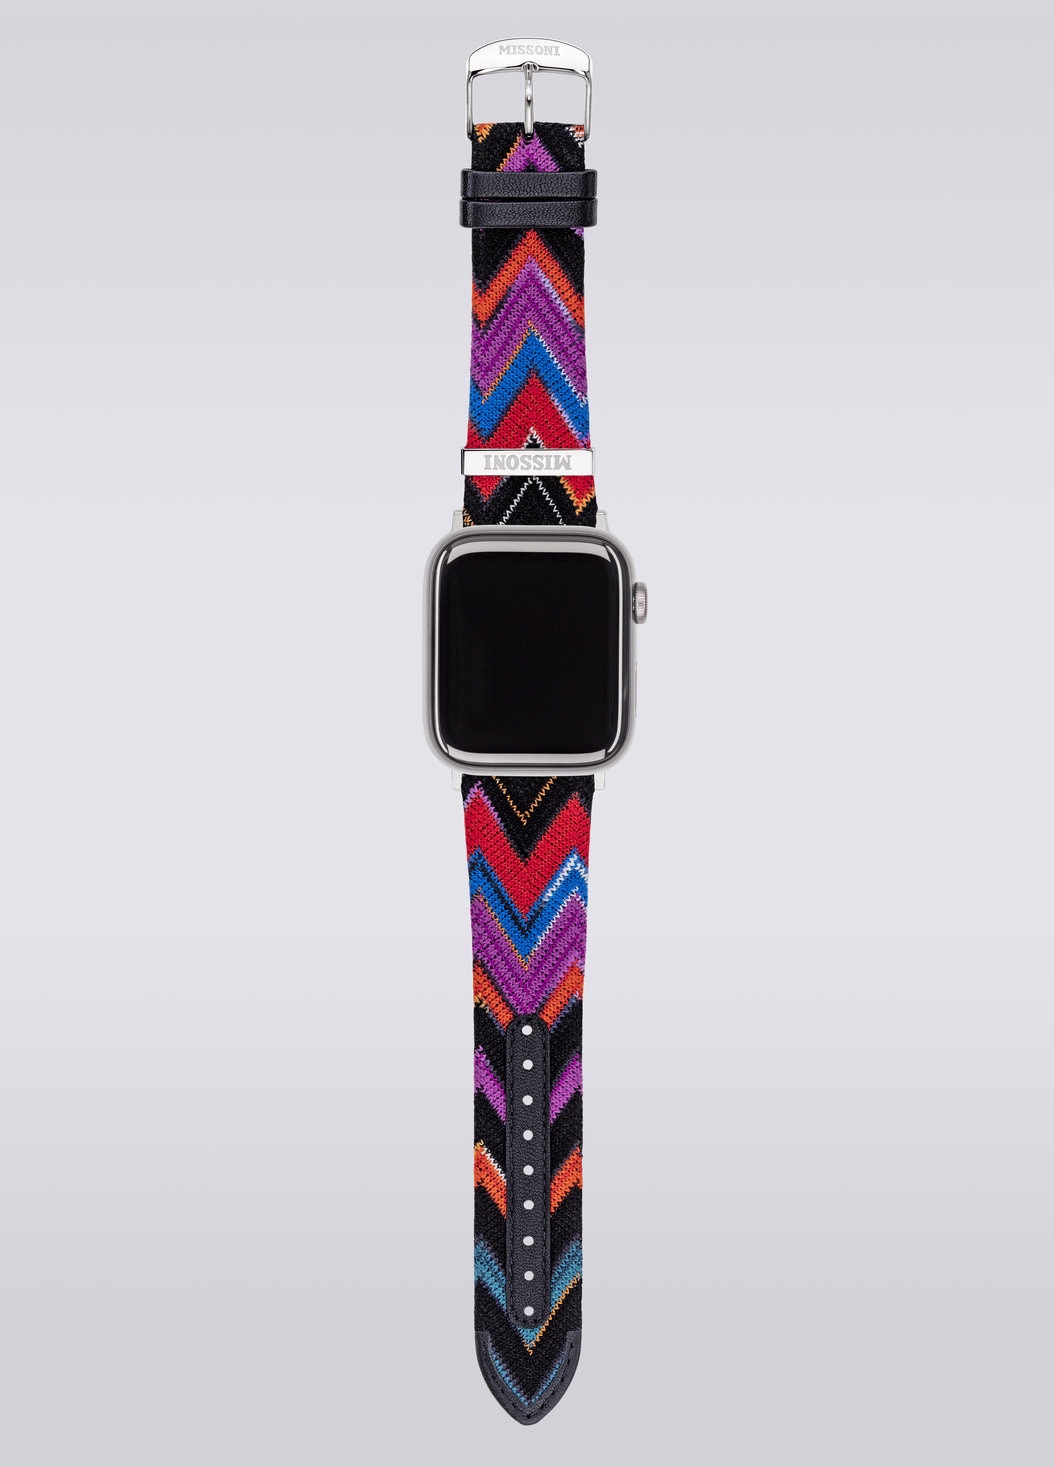 Missoni Fabric 24 mm mit Apple Watch kompatibles Armband, Mehrfarbig  - 8053147046259 - 4